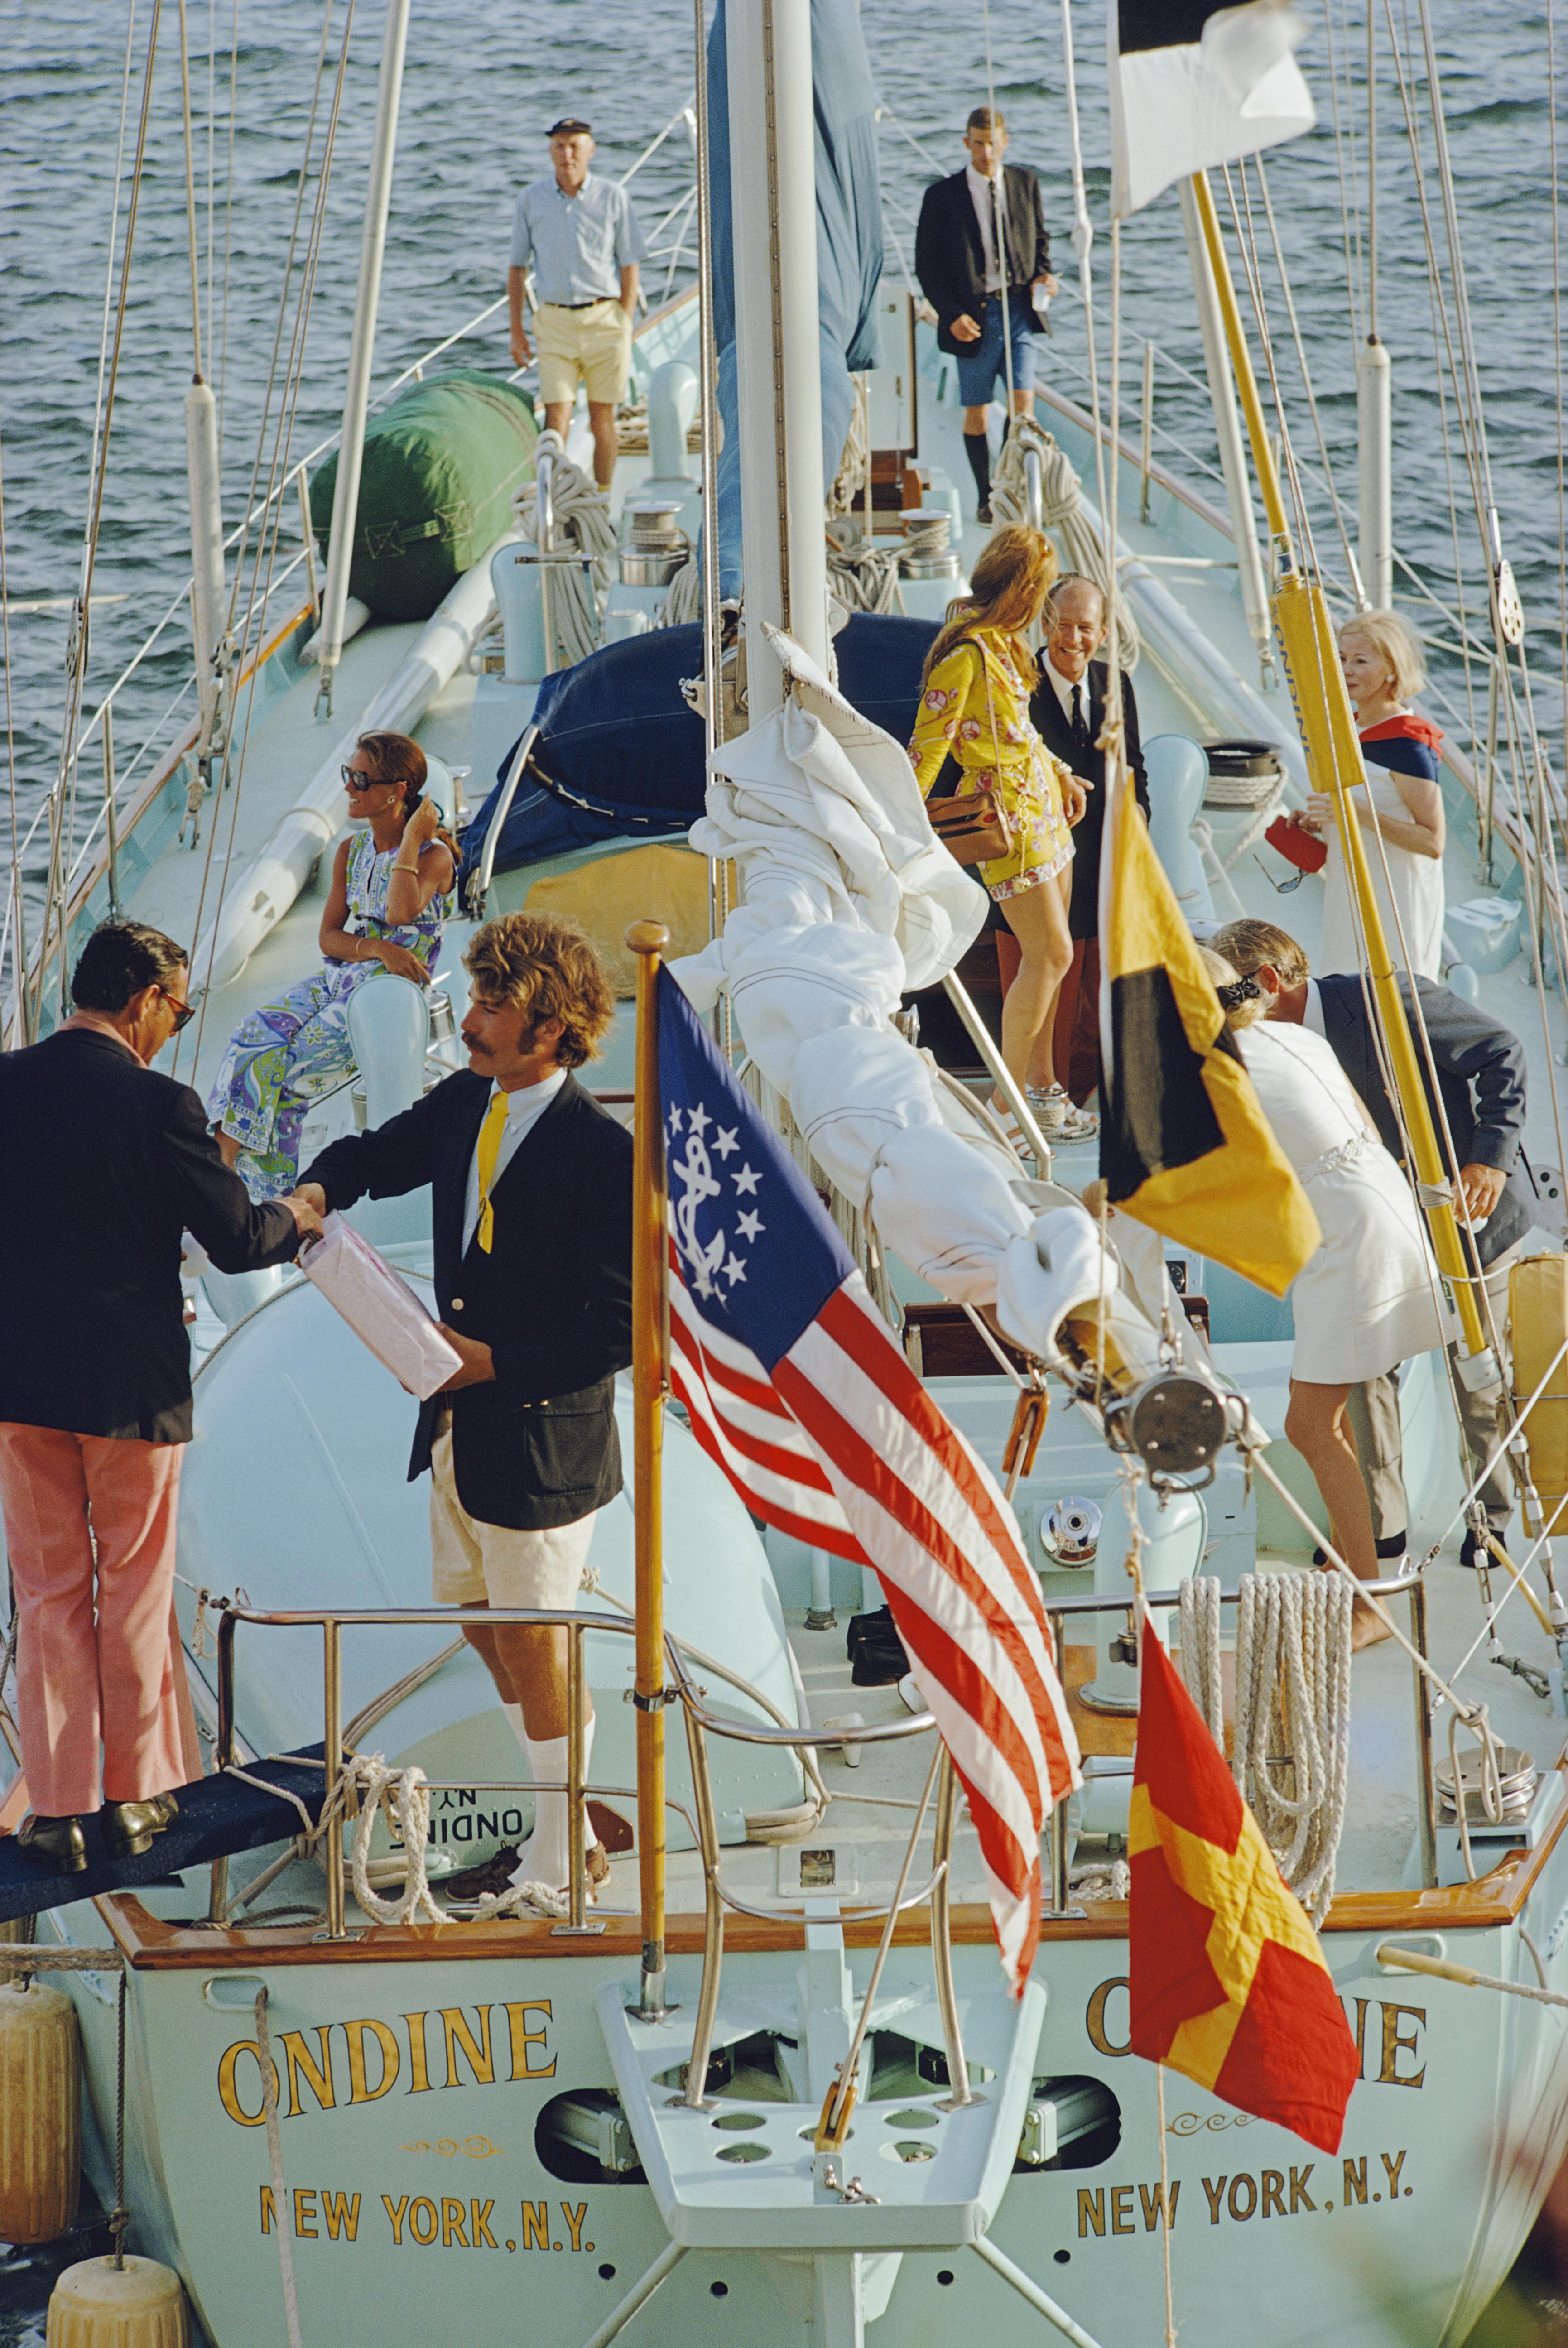 Figurative Photograph Slim Aarons - Party In Bermuda, édition de succession (1970 sur le yacht Ondine en jaune et rouge)